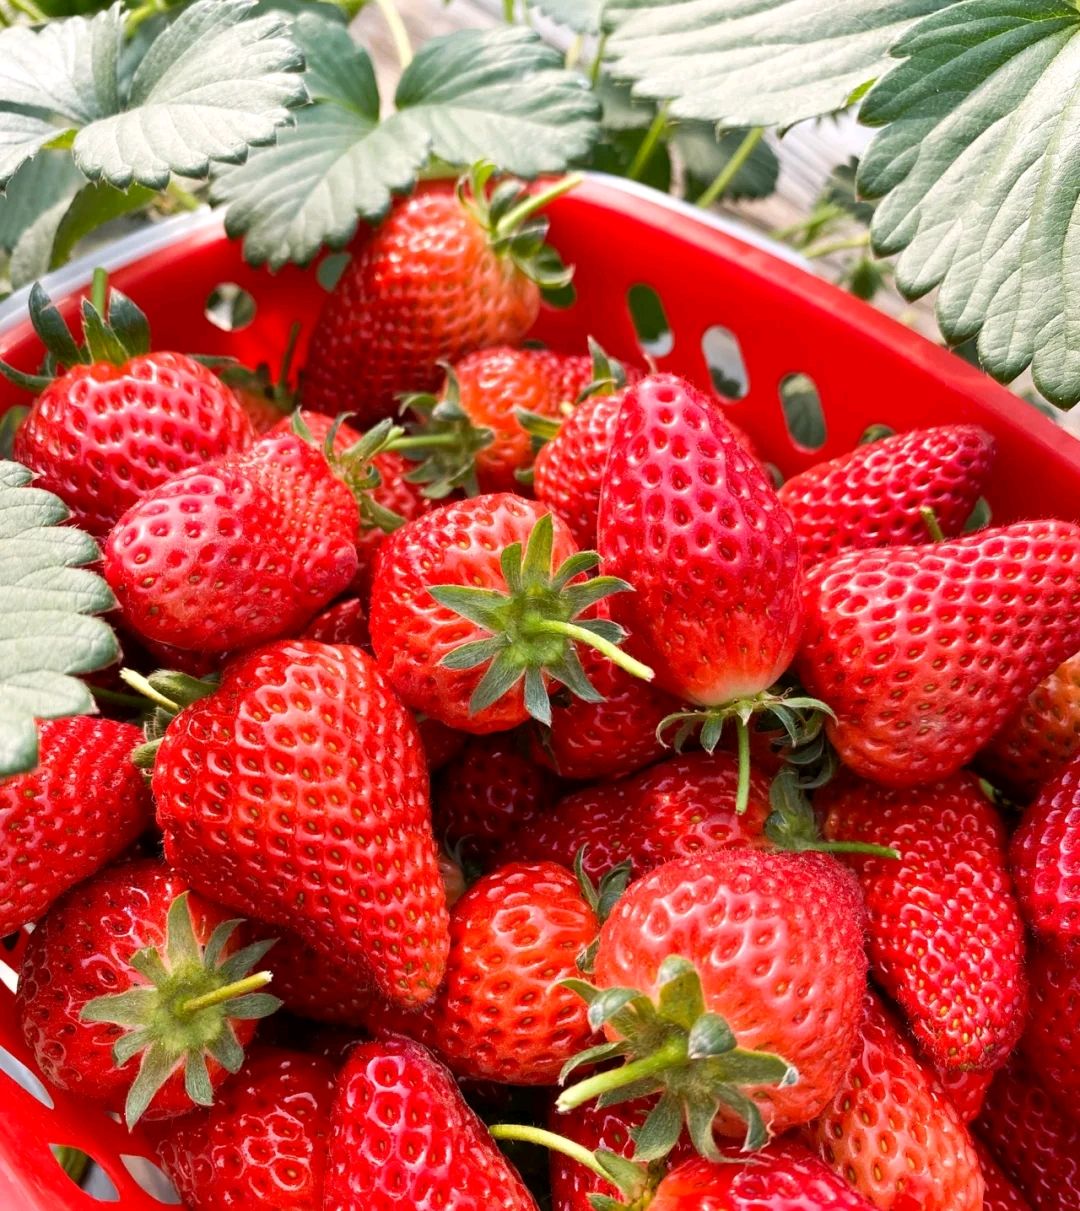 27草莓品种和图片图片